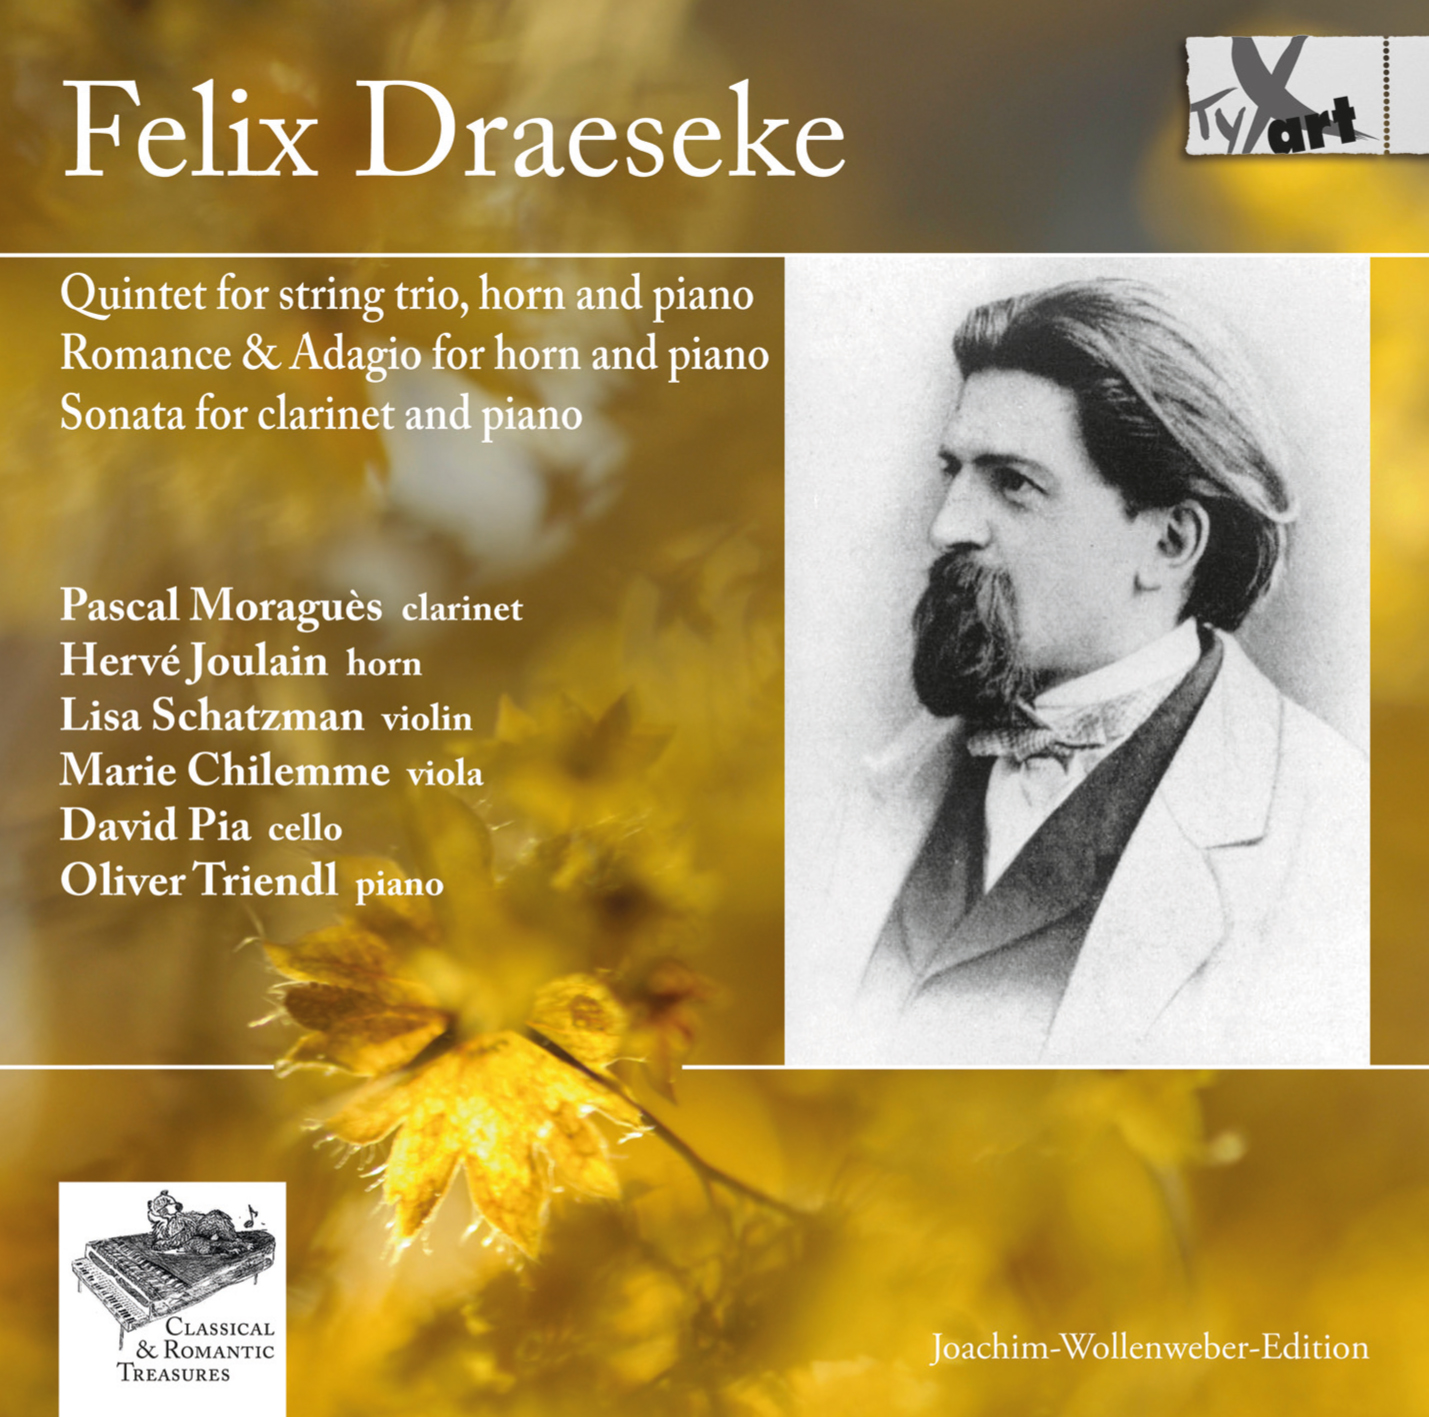 Felix Draeseke: Kammermusik-Werke op.48, op.32, op.31 und op.38